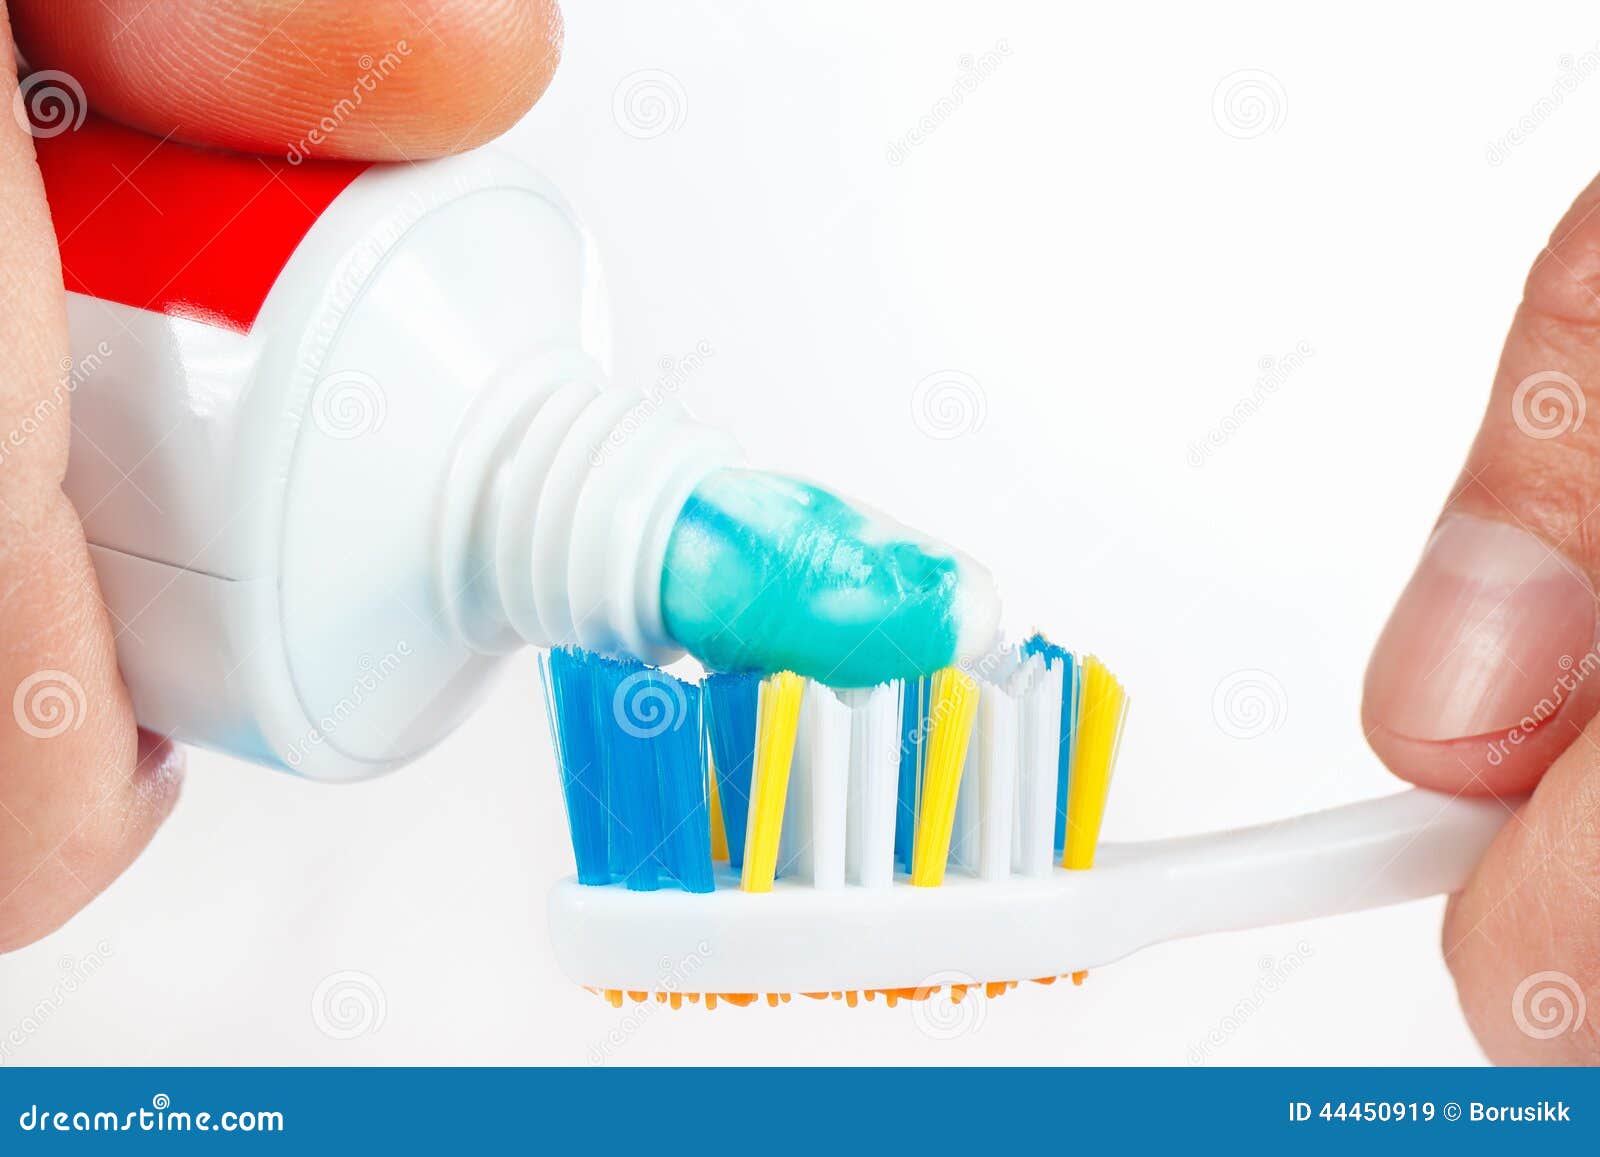 Можно чистить зубы в рамадан зубной пастой. Зубная паста и щетка. Аппарат для чистки зубов. Зубная щетка в руке. Зубная паста kan.